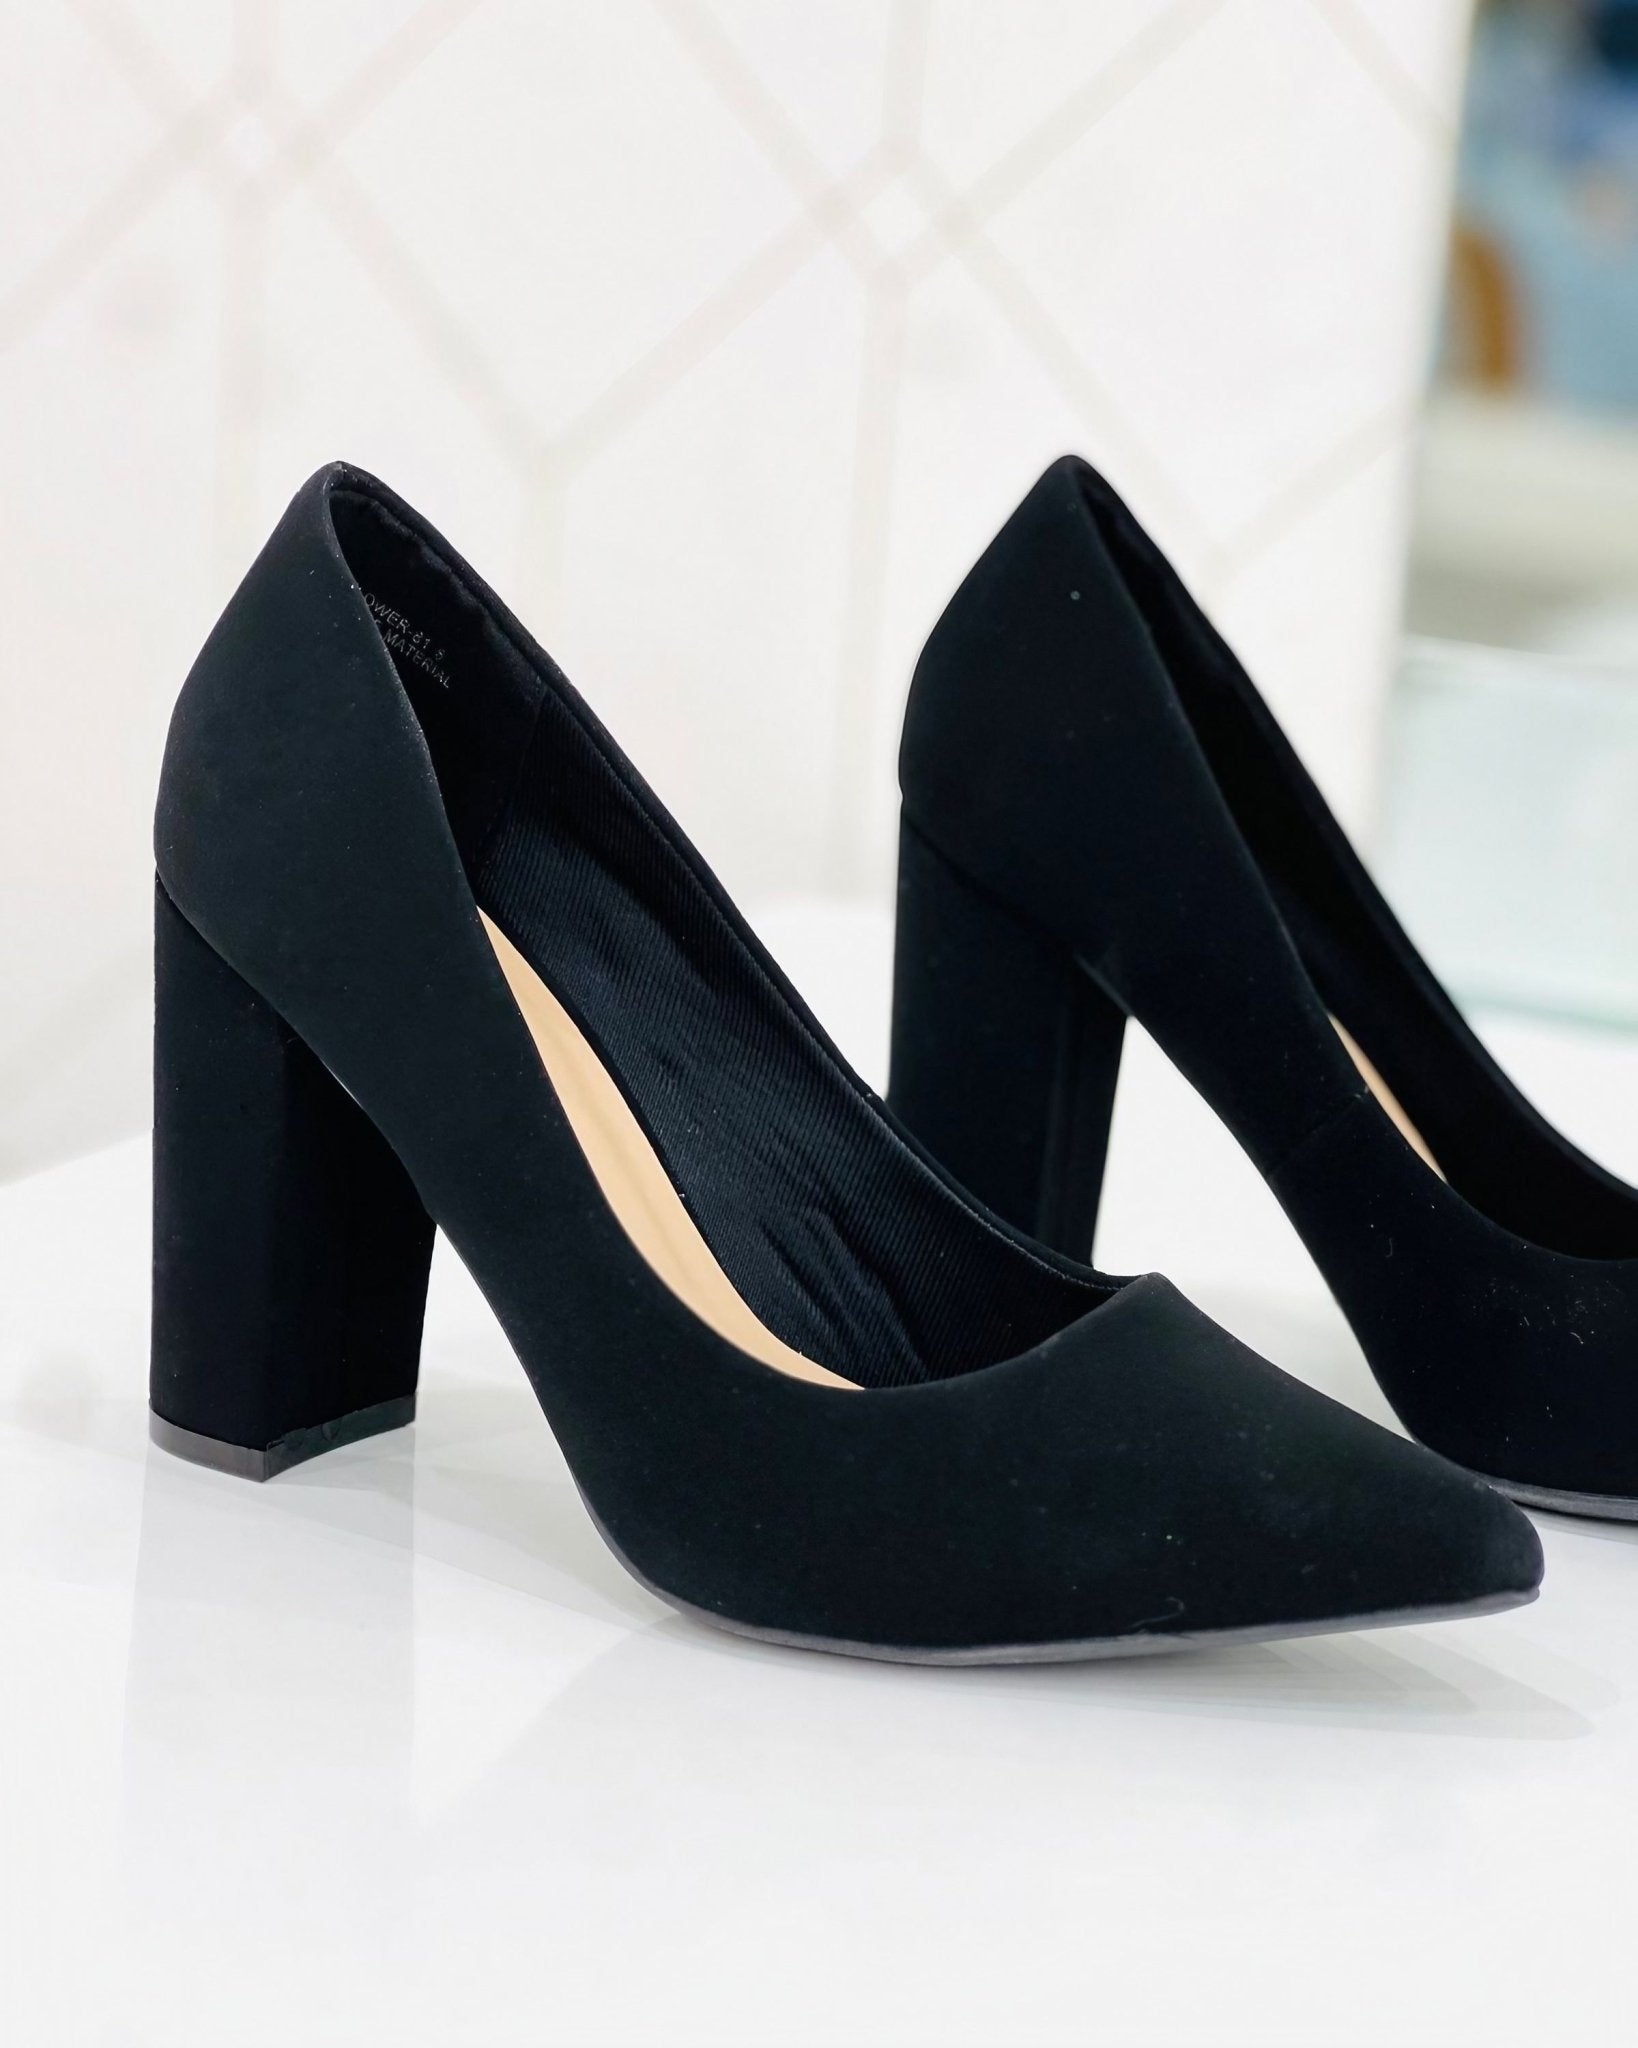 Zapatos de Tacón Alto Negro Elegancia Clásica para Mujer - Roxanz